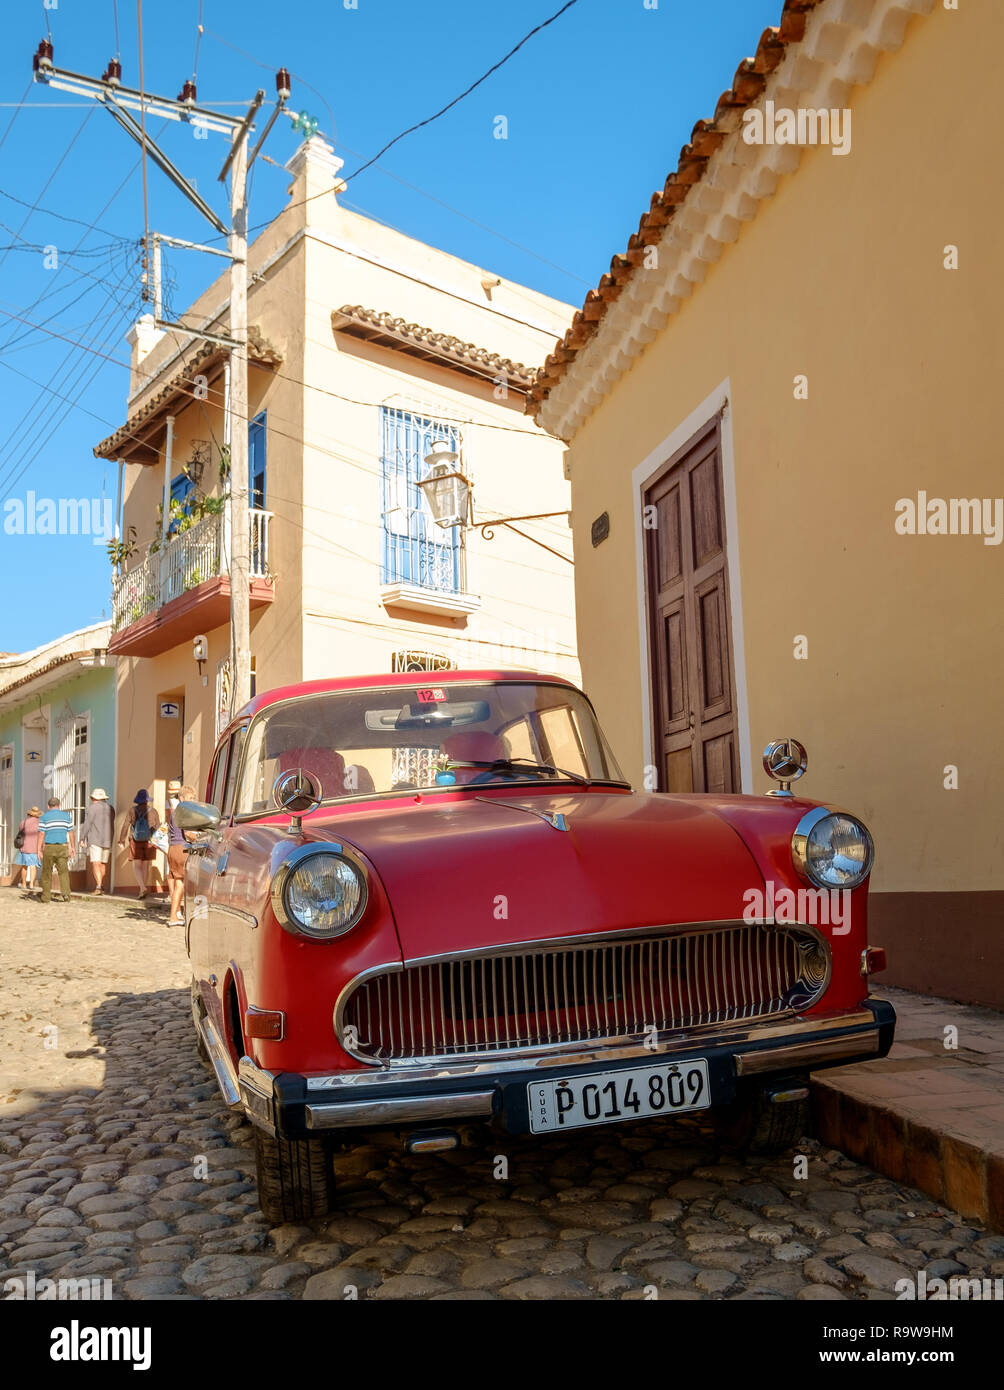 Coches clásicos americanos en Trinidad, Cuba Foto de stock